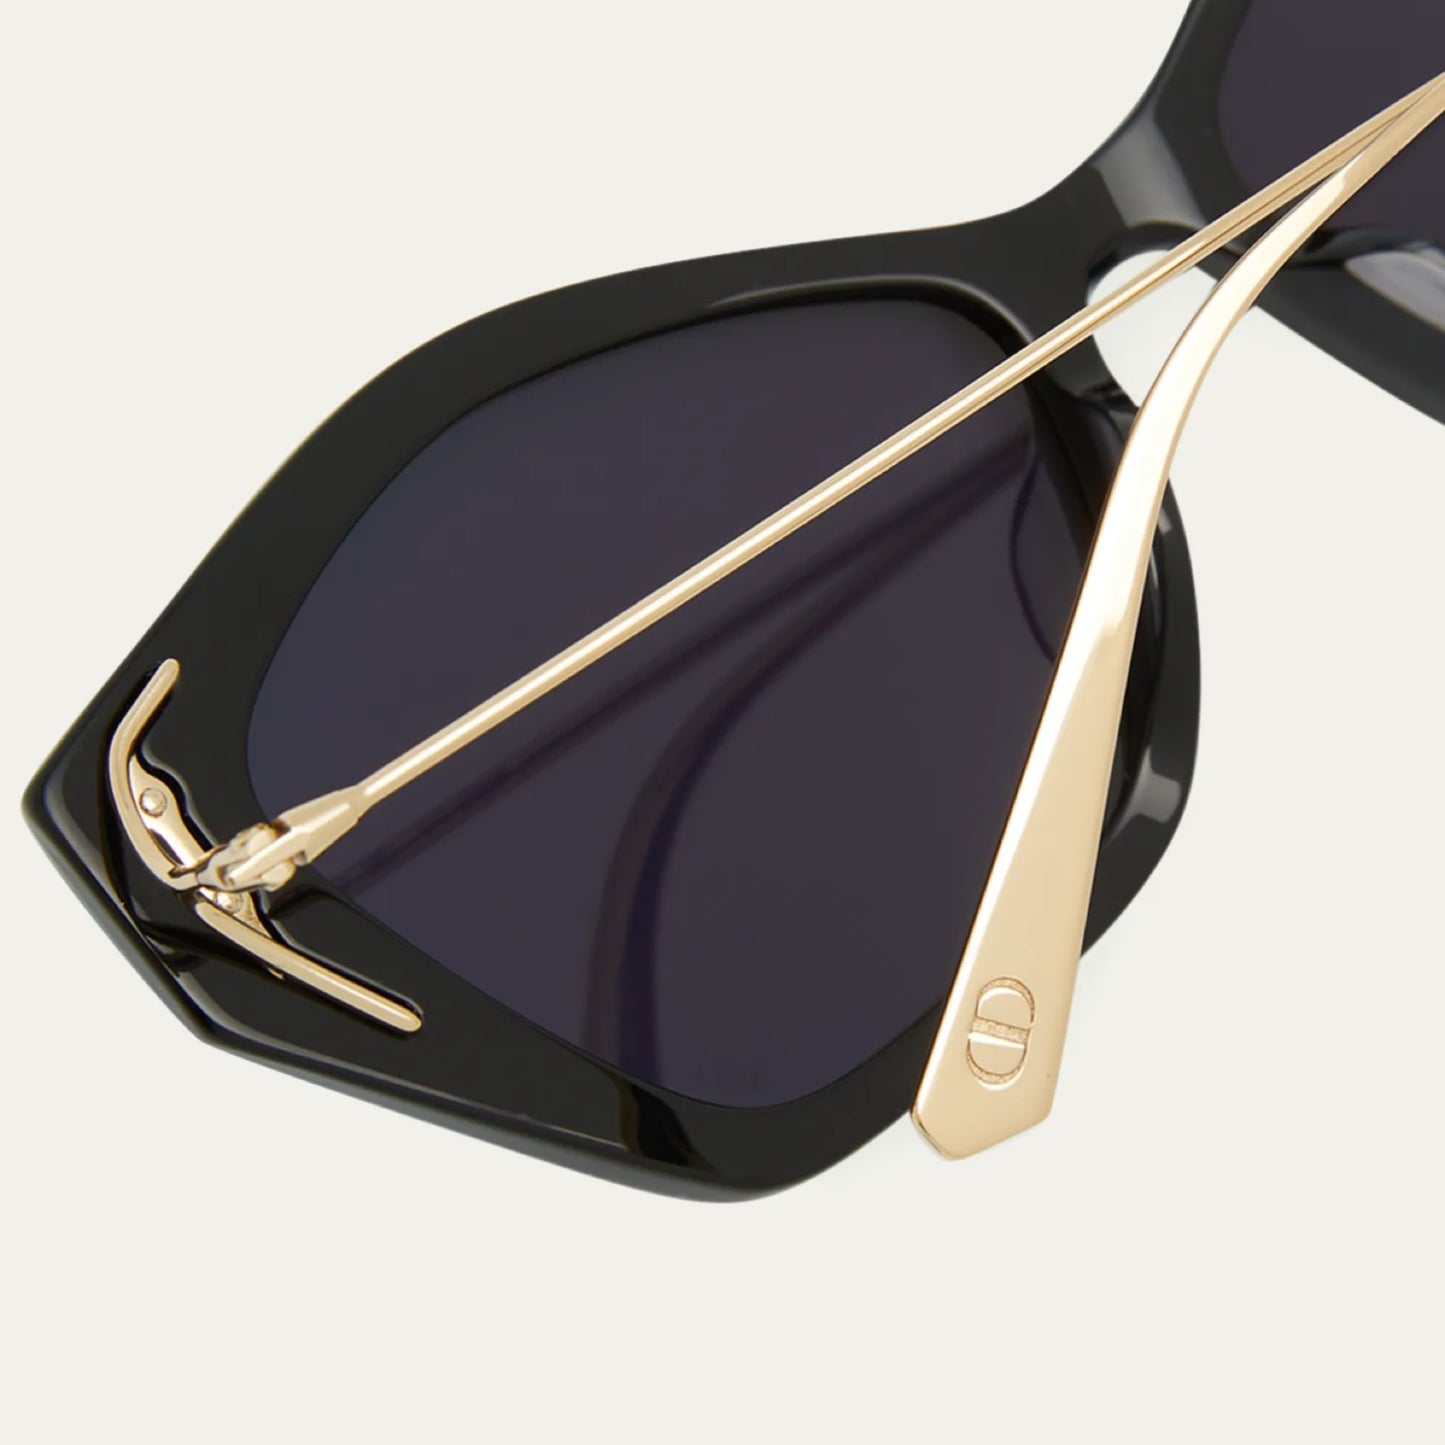 Dior MissDior S1U Sunglasses